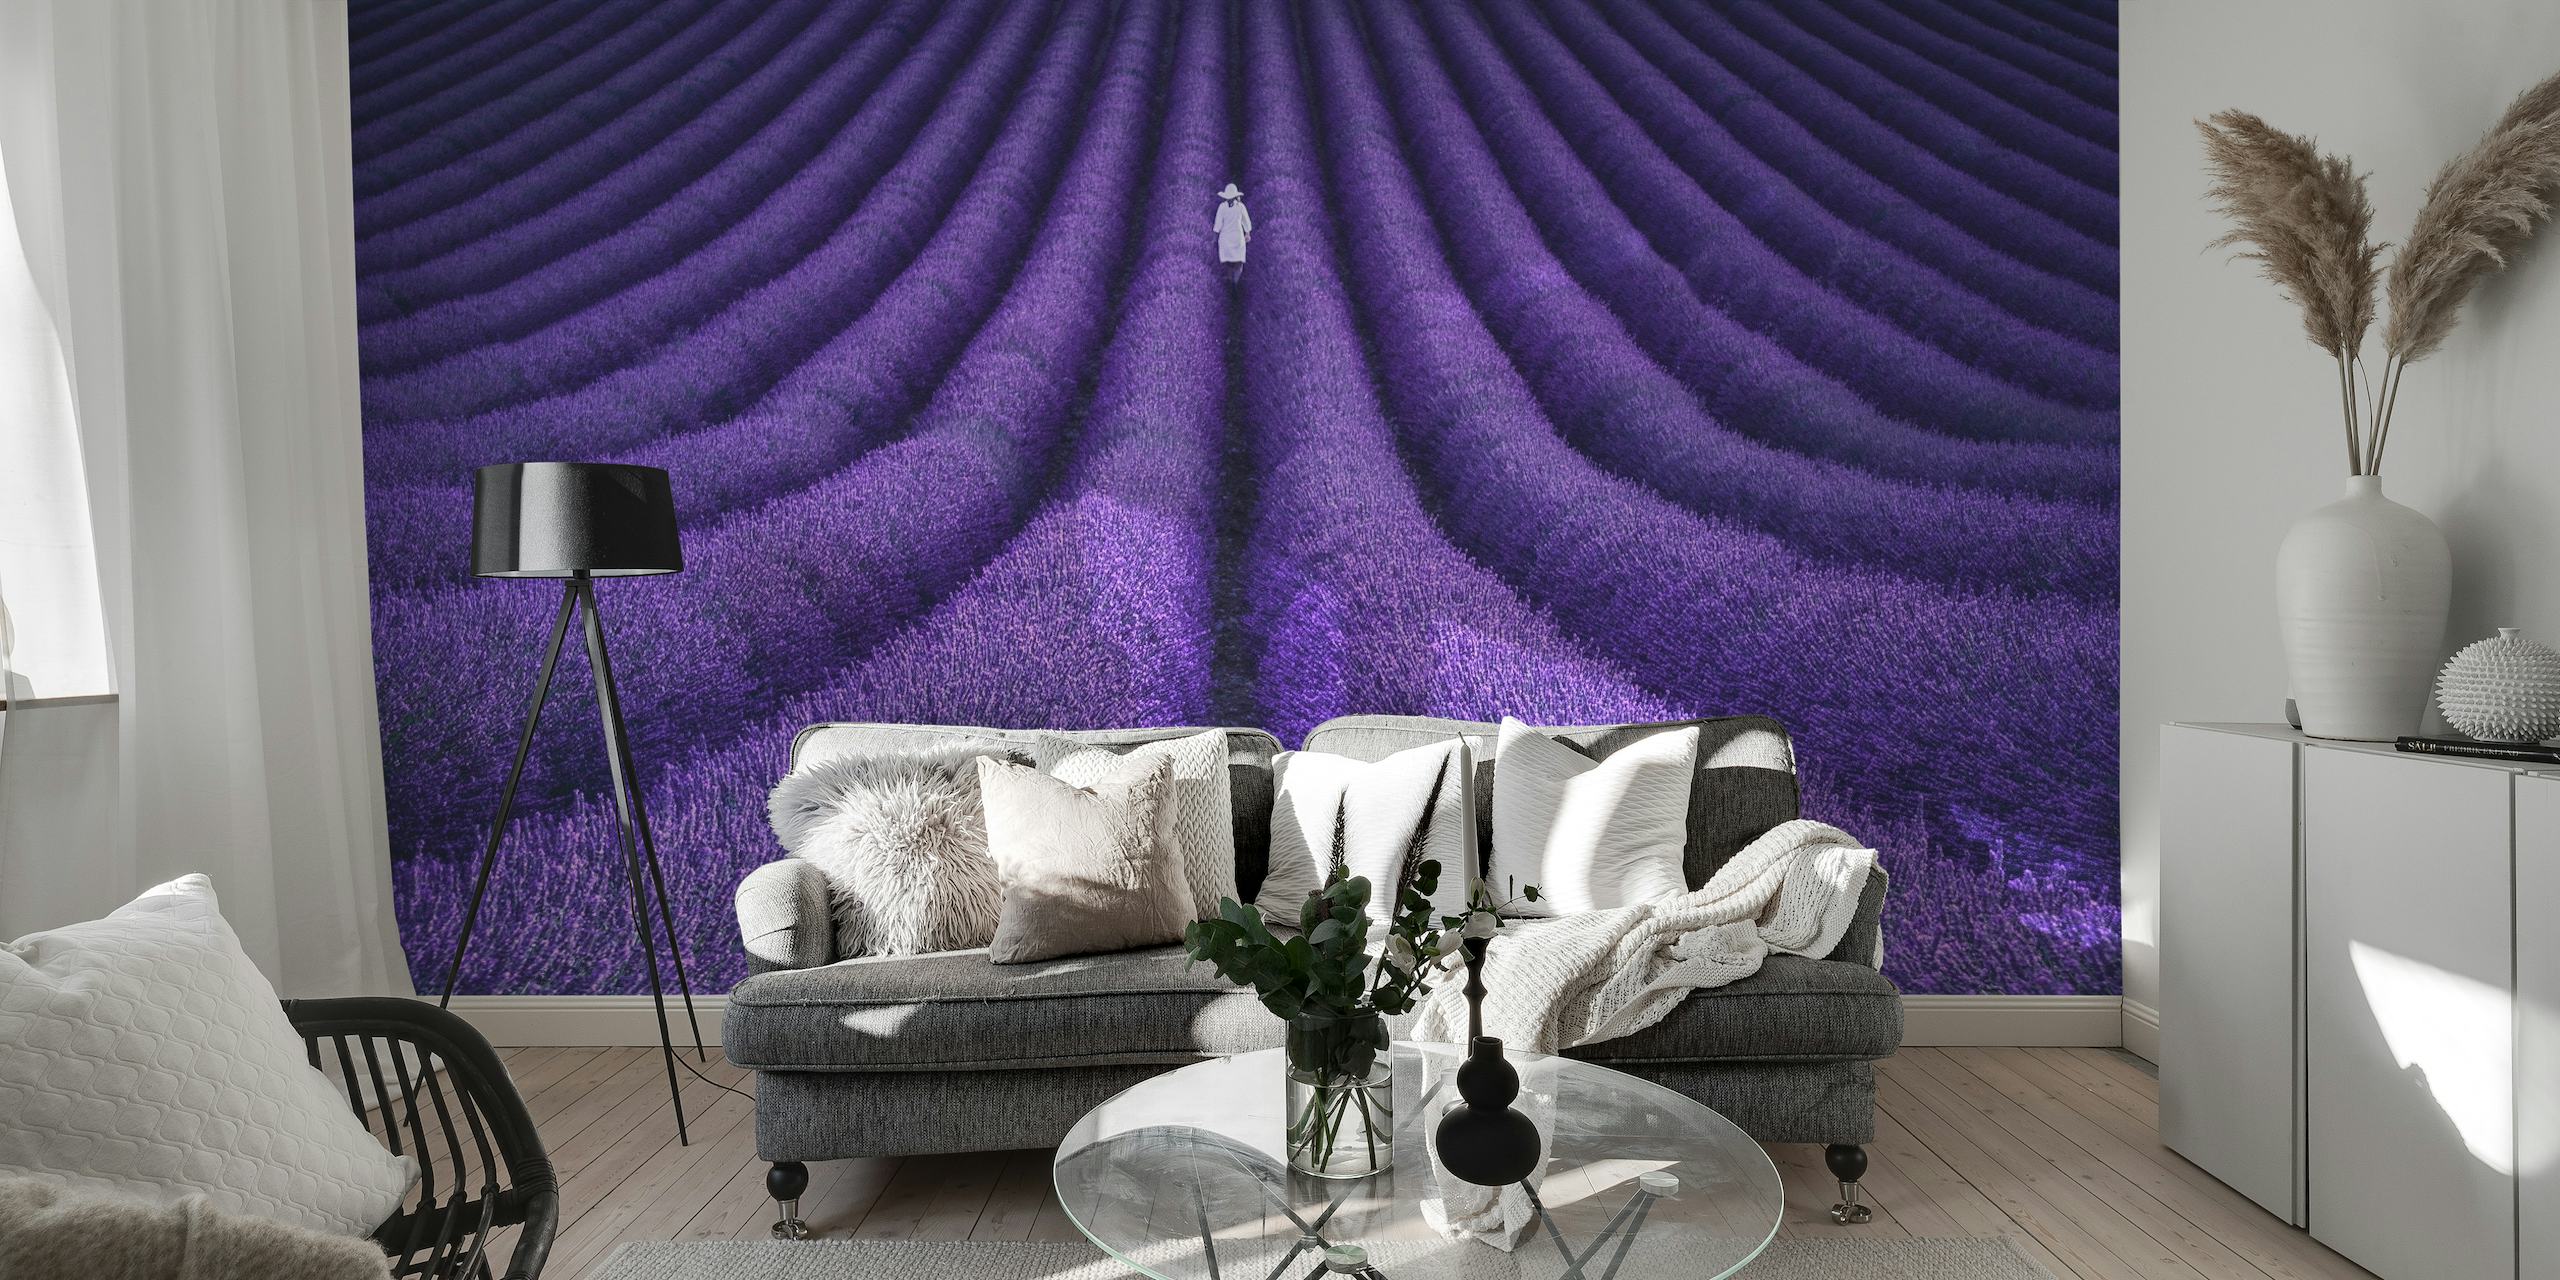 Lavendelfeltveggmaleri med en enslig figur